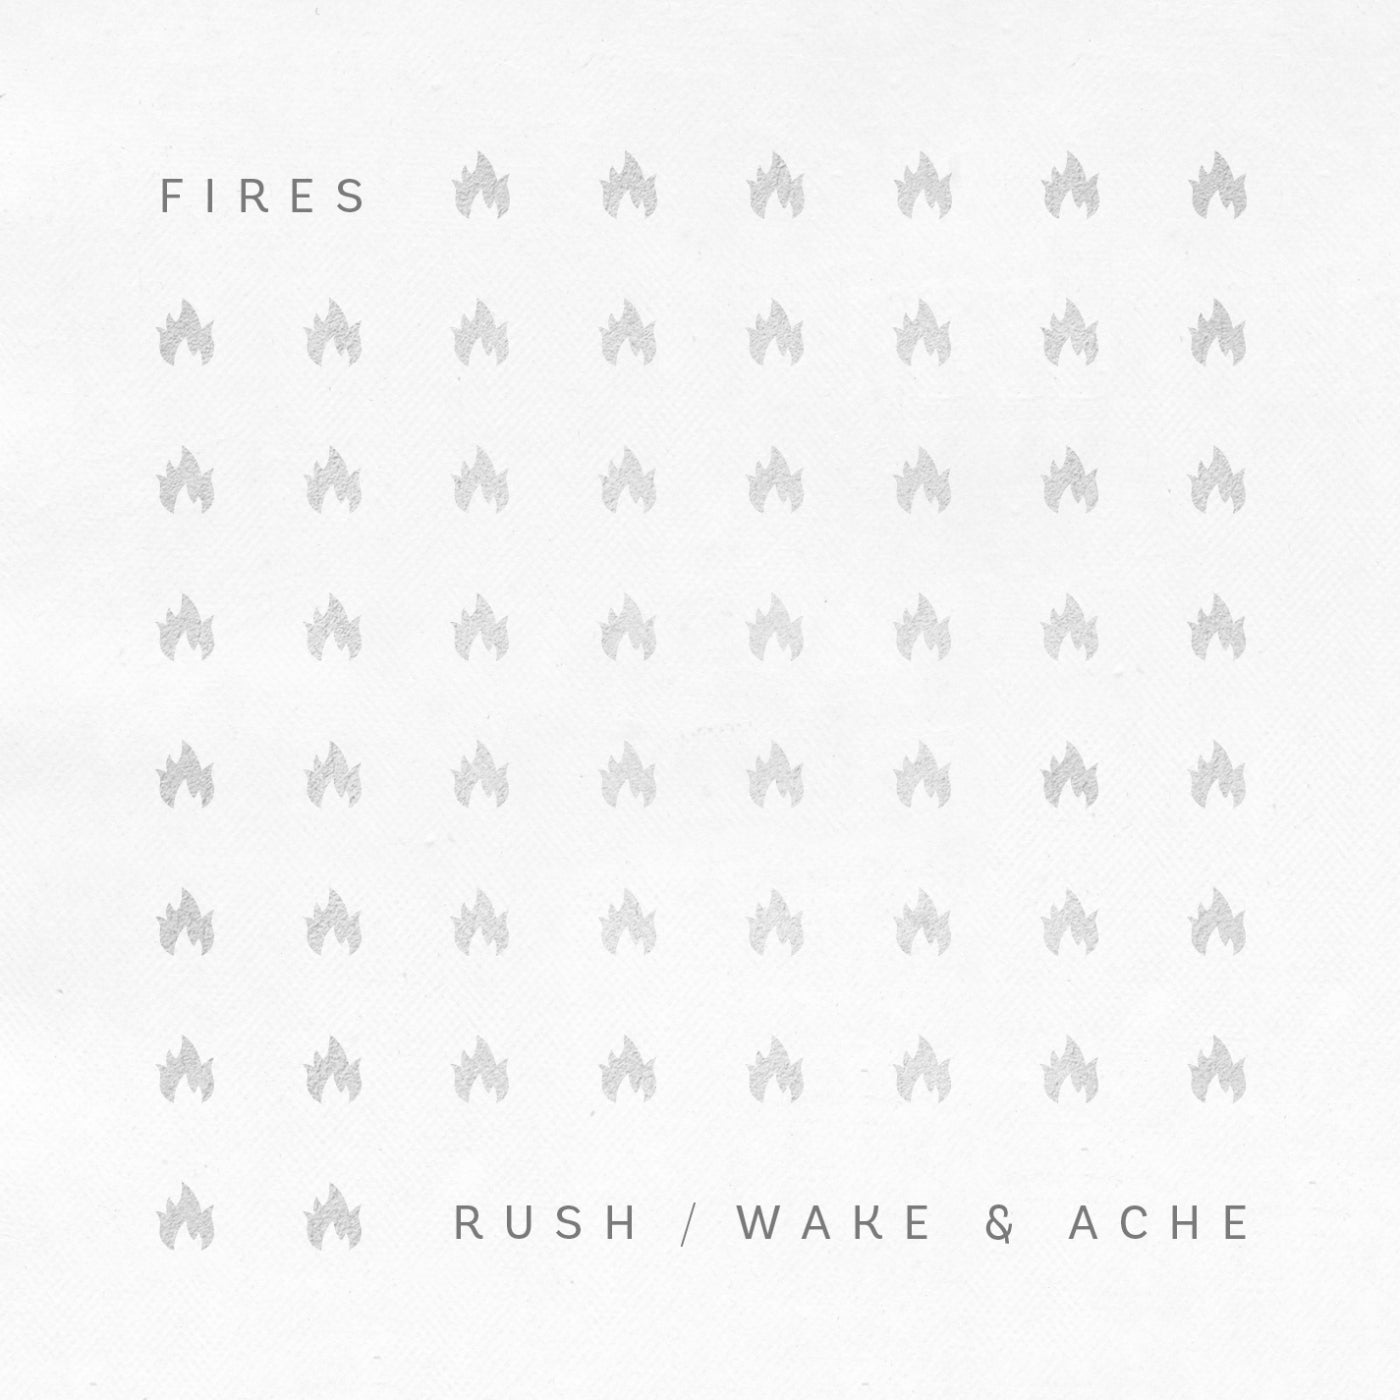 Rush / Wake & Ache